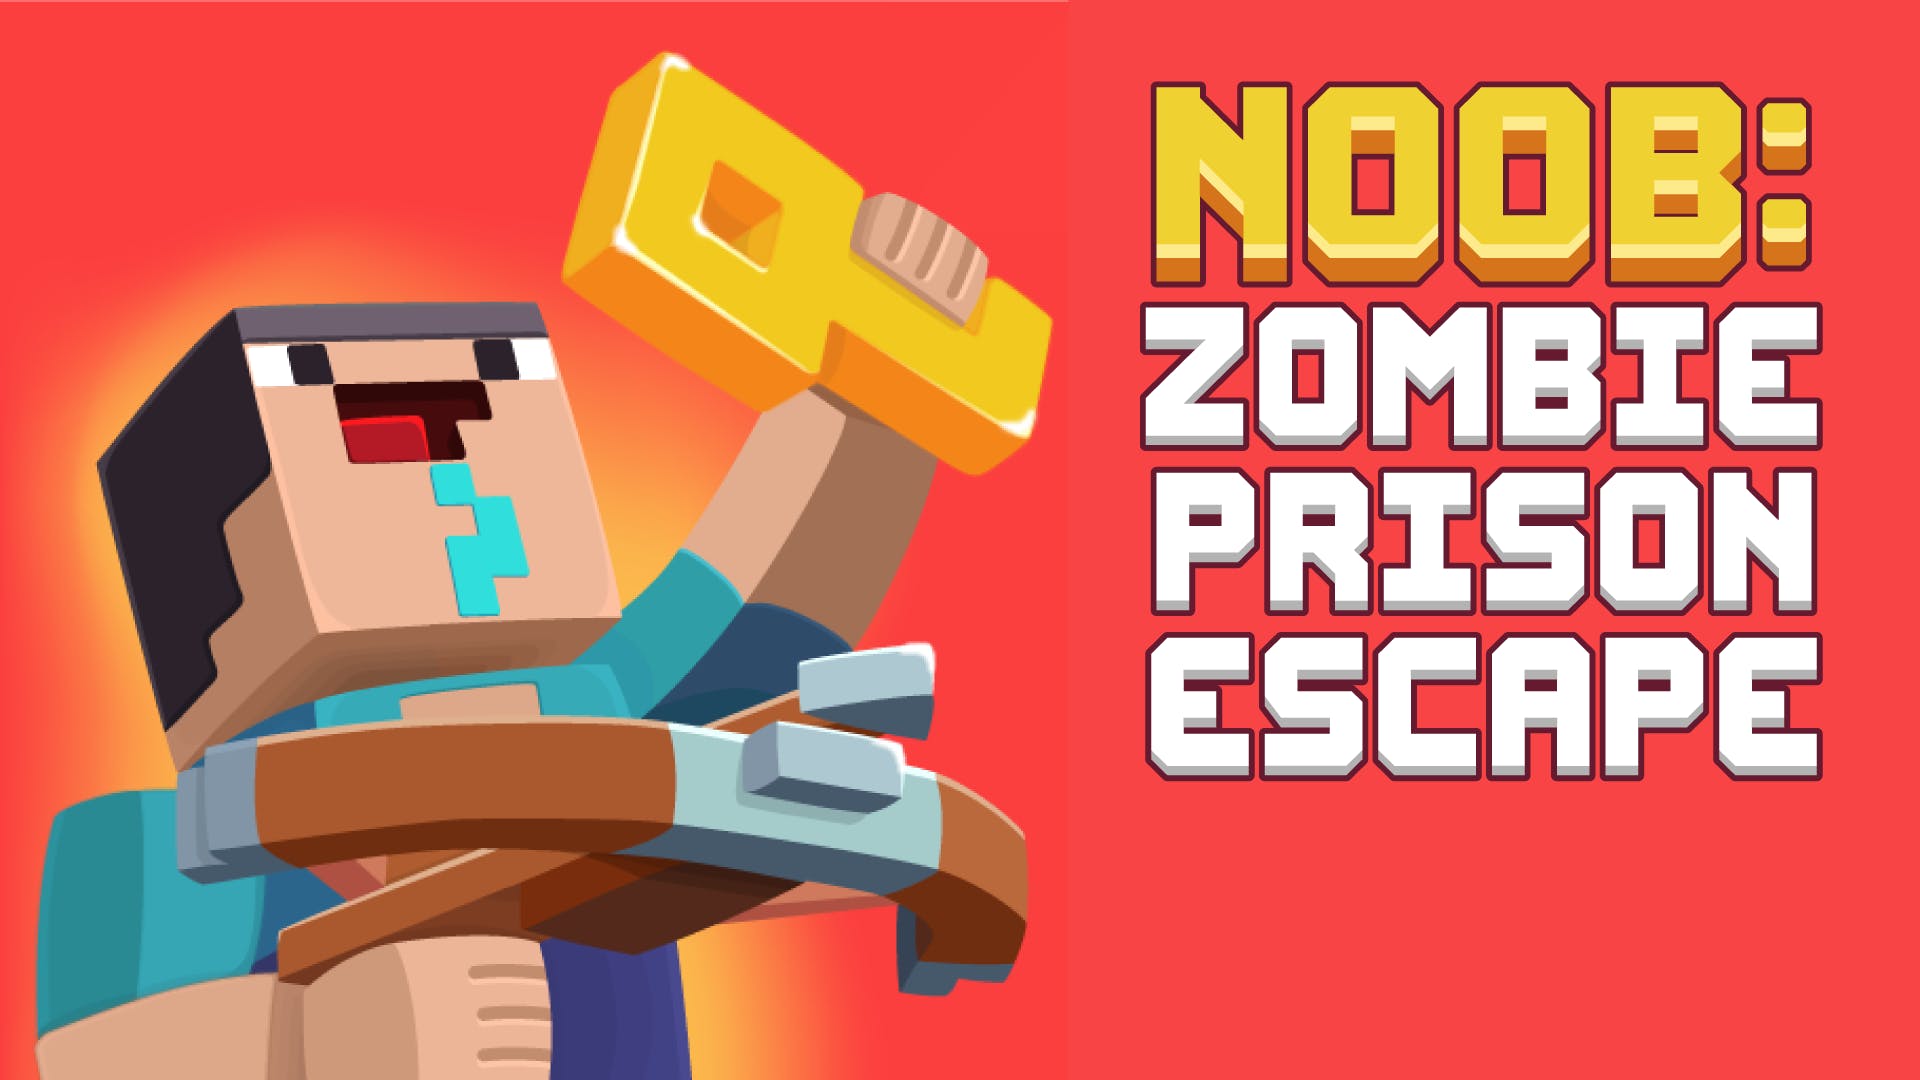 Prison Escape Puzzle: Adventure - Play UNBLOCKED Prison Escape